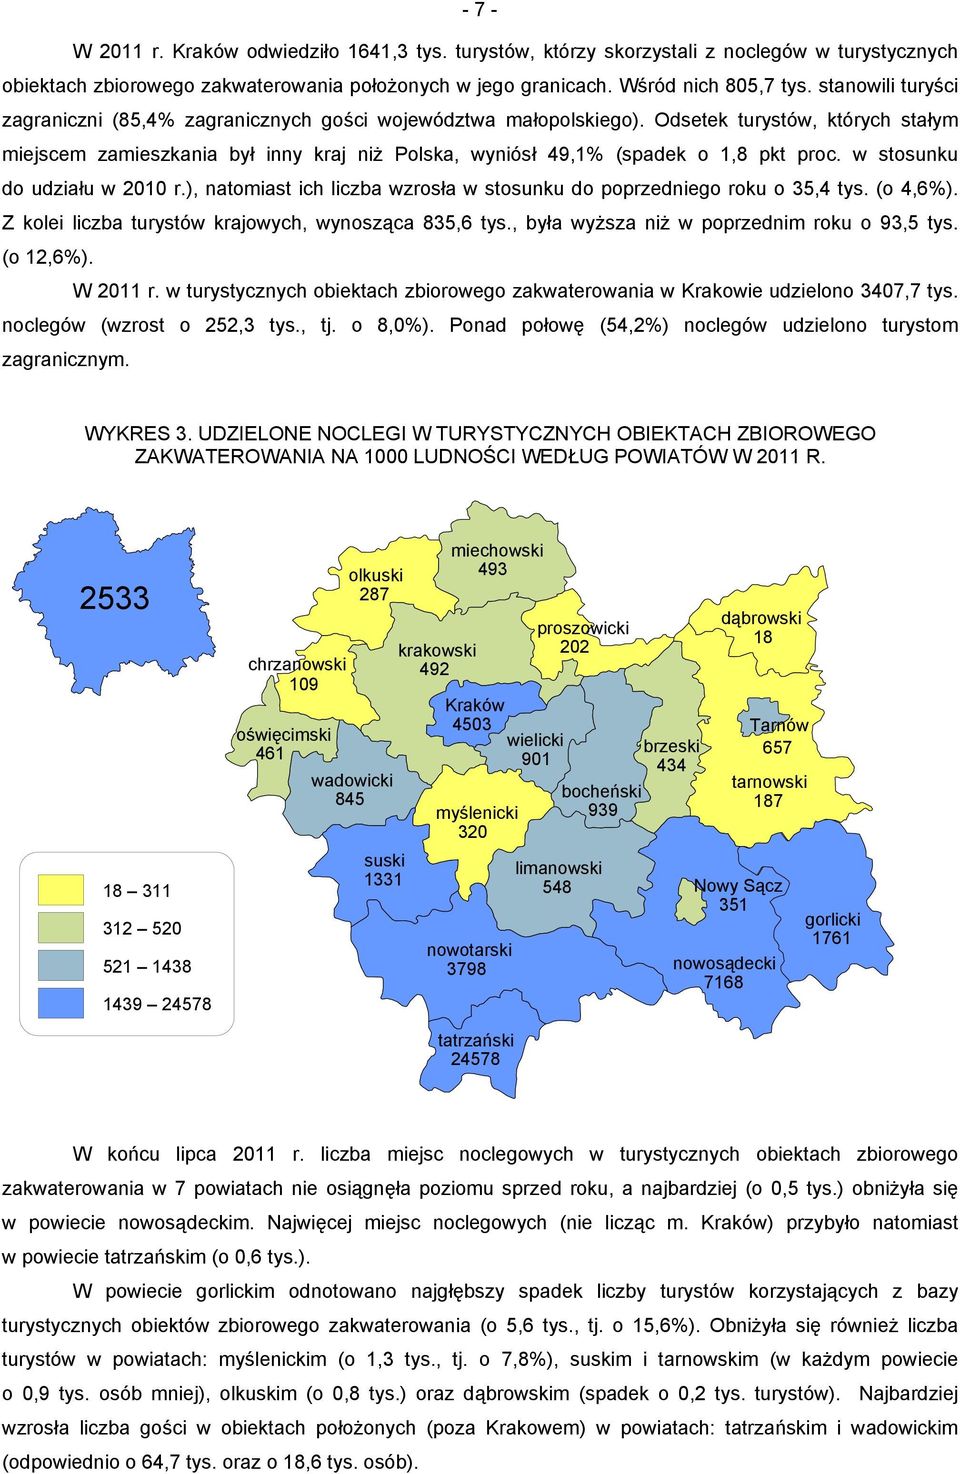 Odsetek turystów, których stałym miejscem zamieszkania był inny kraj niż Polska, wyniósł 49,1% (spadek o 1,8 pkt proc. w stosunku do udziału w 2010 r.